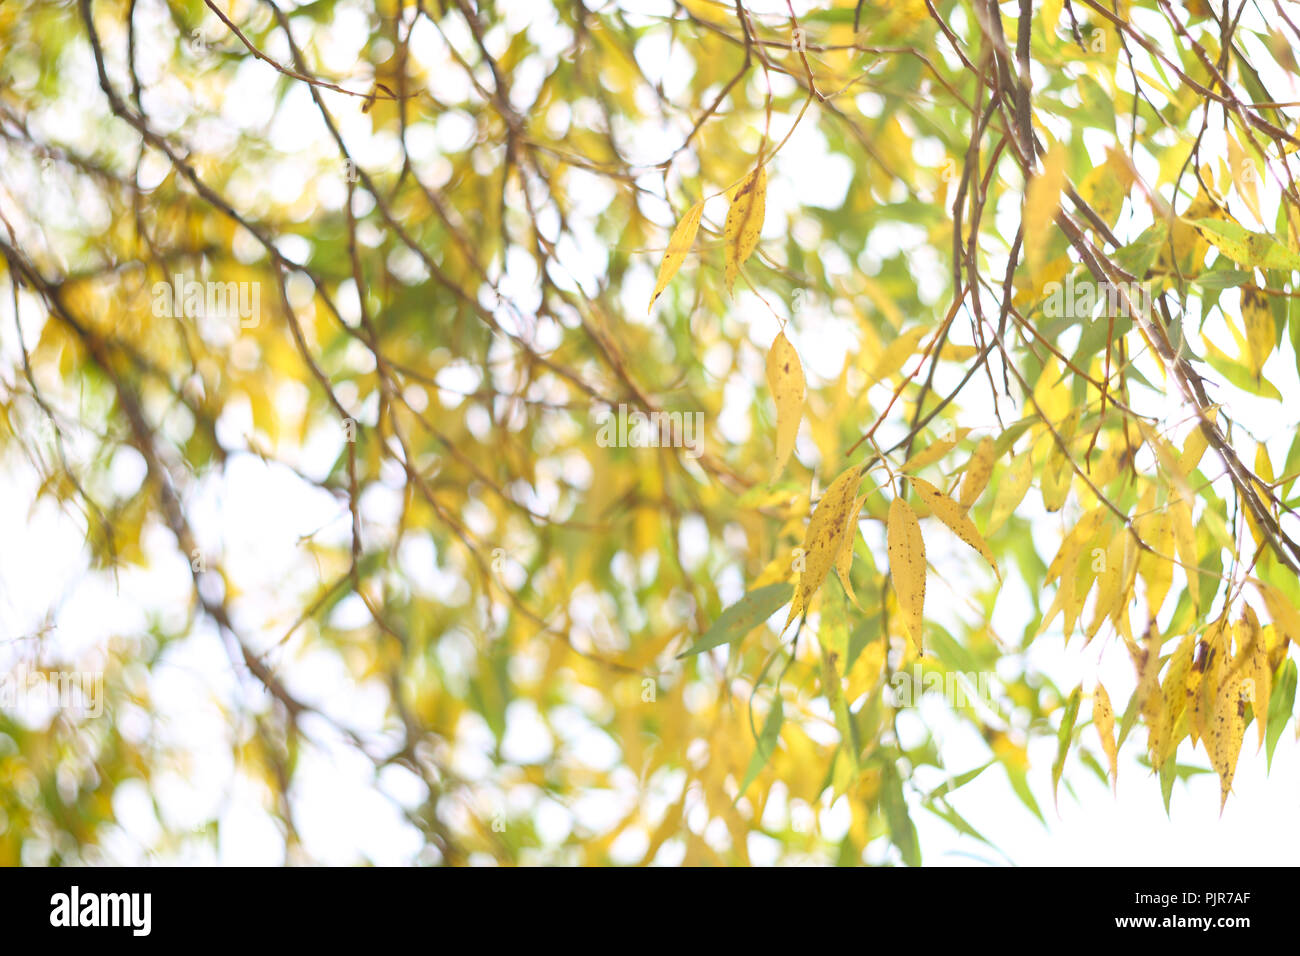 Willow Tree or jaune avec des feuilles en automne Banque D'Images